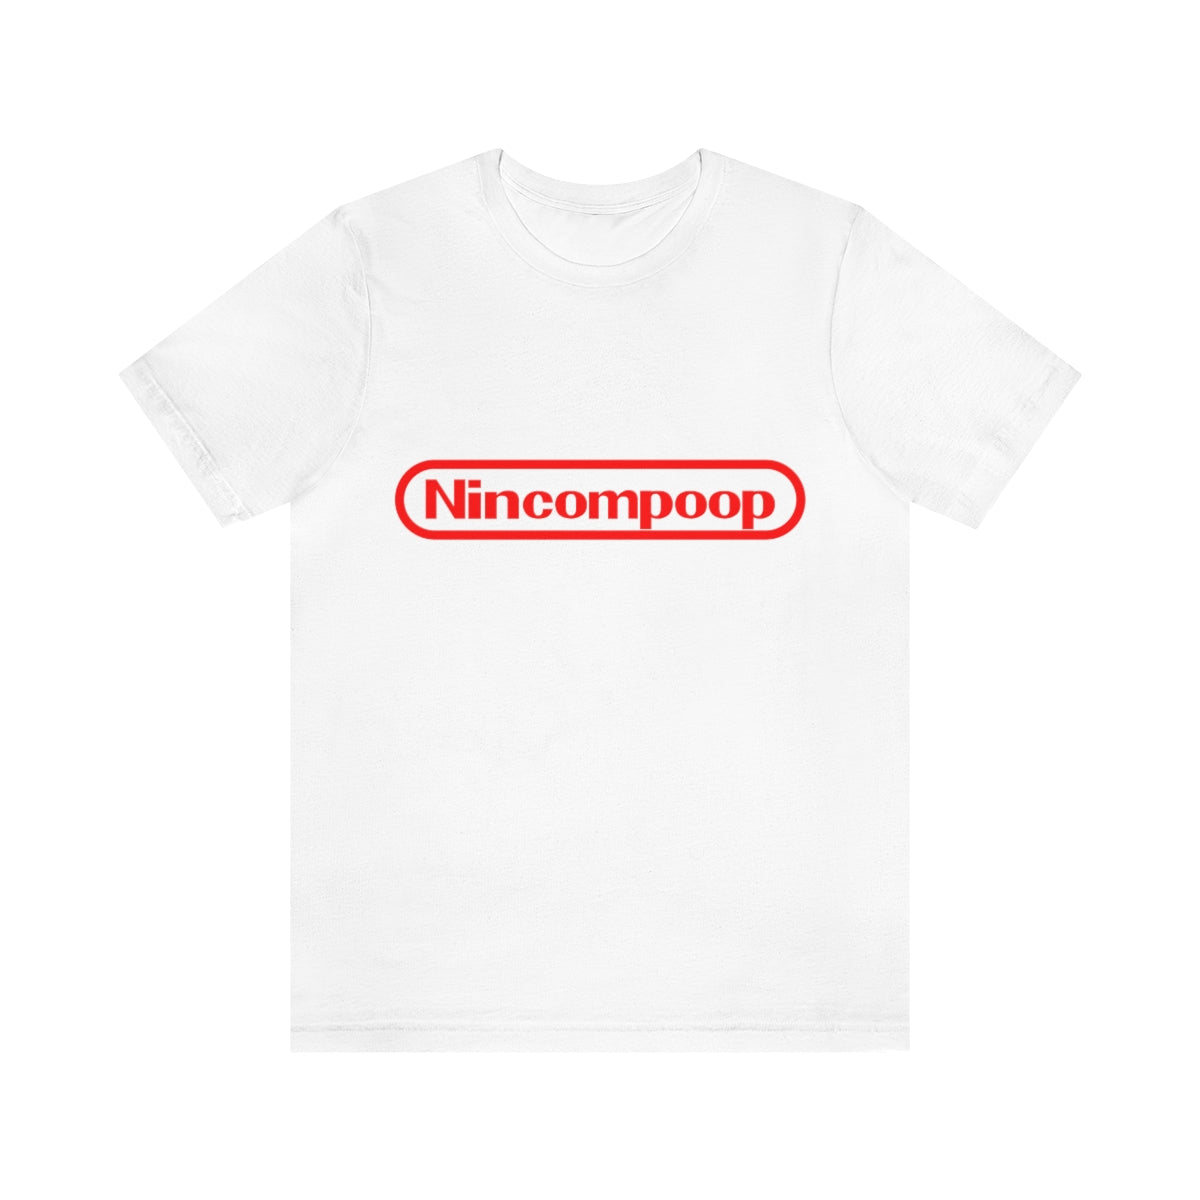 Nincompoop T-Shirt